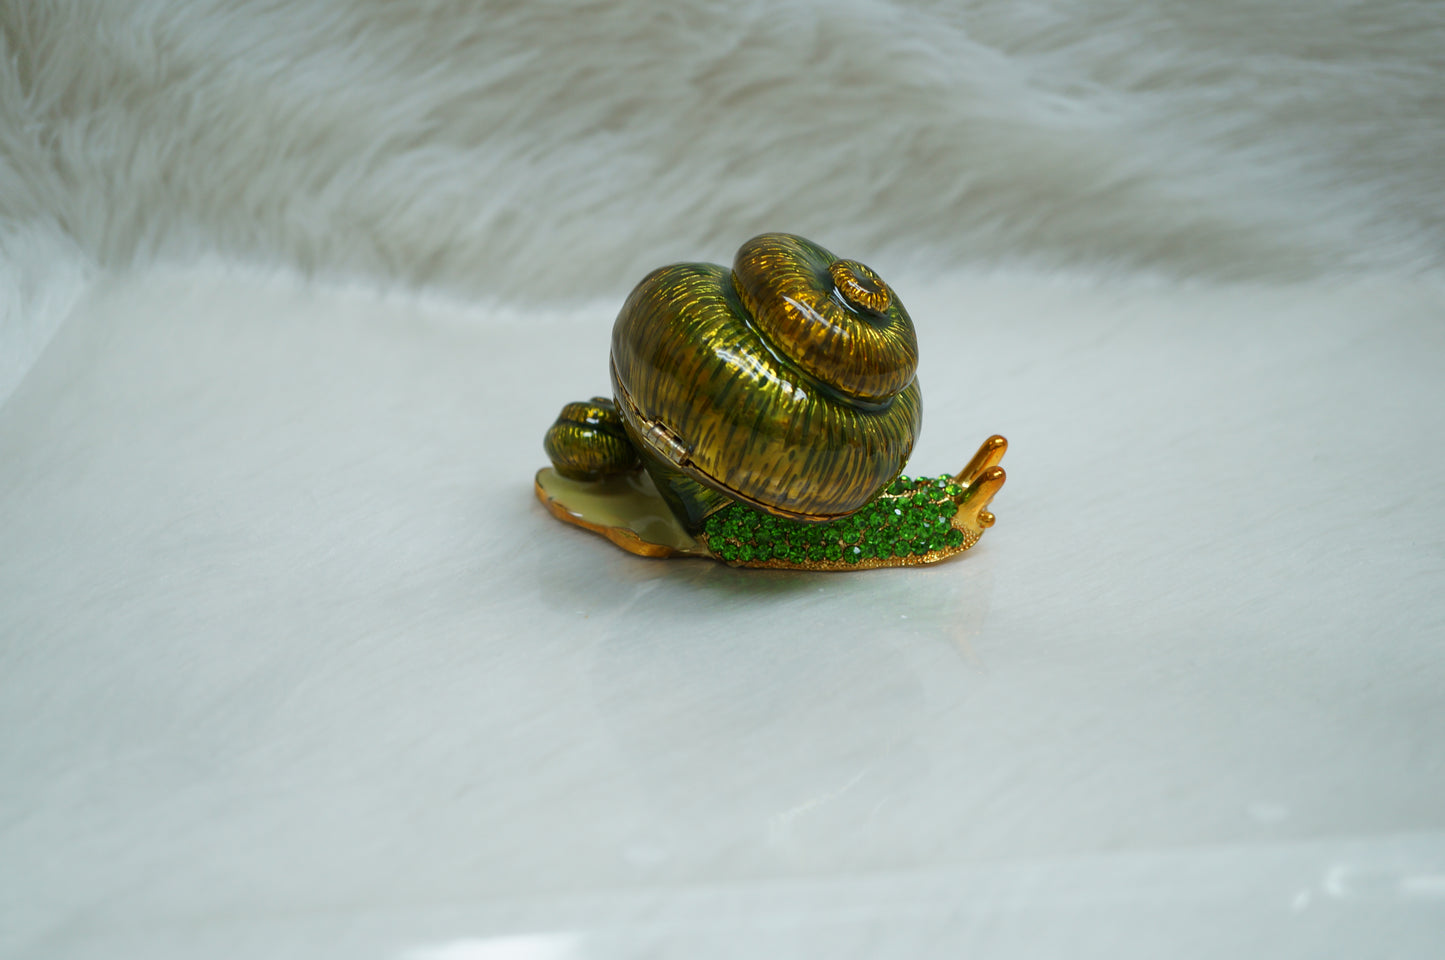 Cristiani Collezione Large Green Snail Trinket Box.